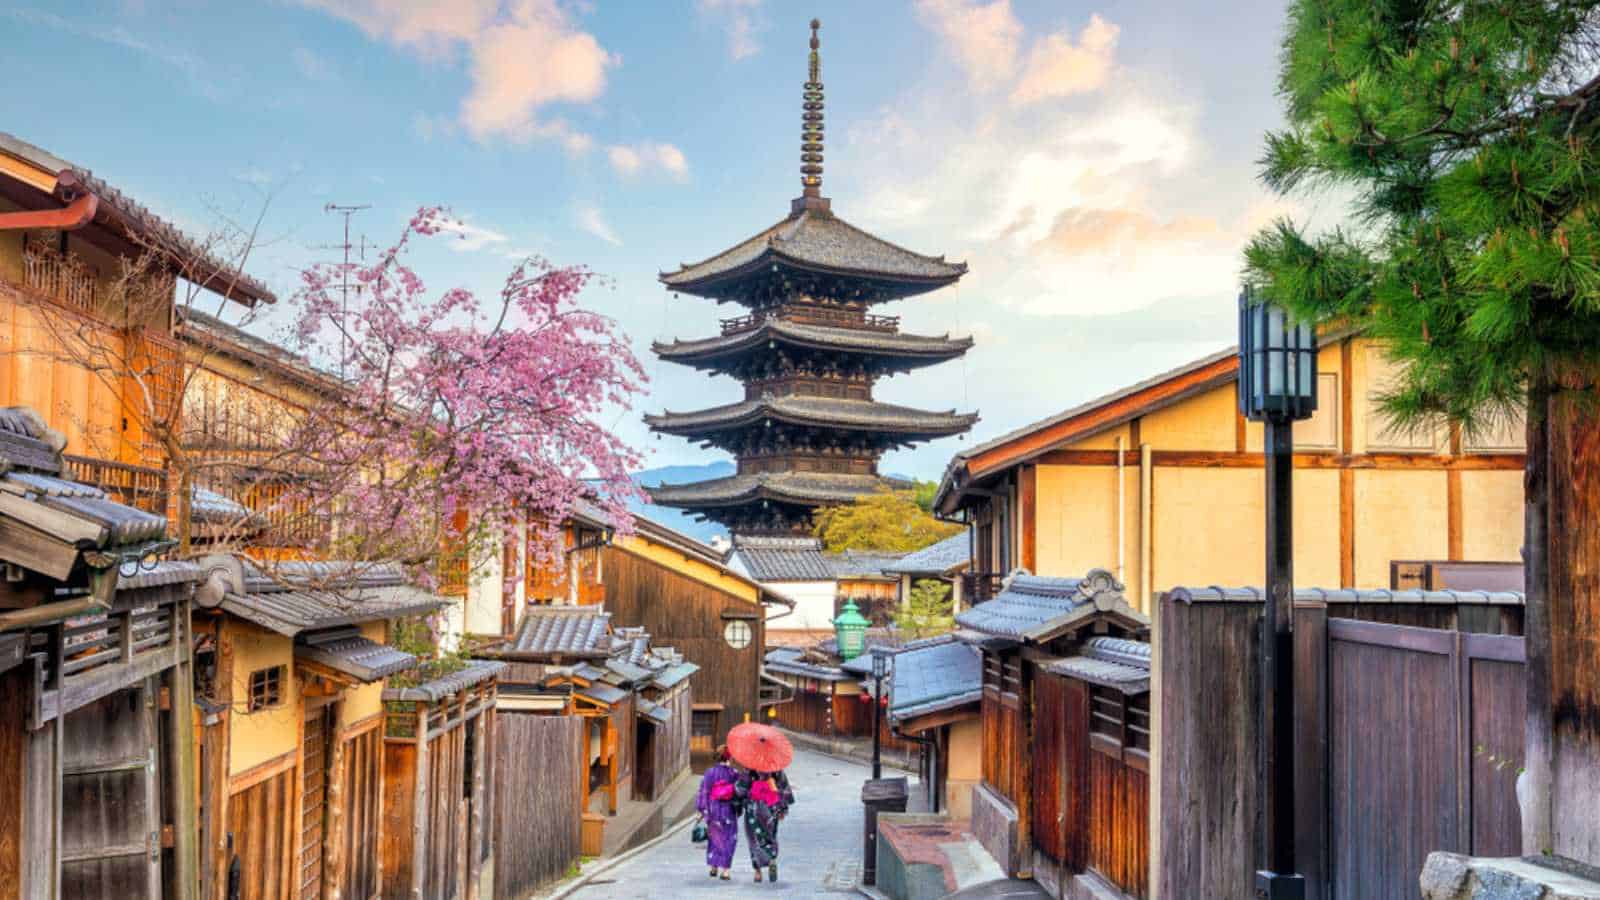 Old town Kyoto during sakura season in Japan.
